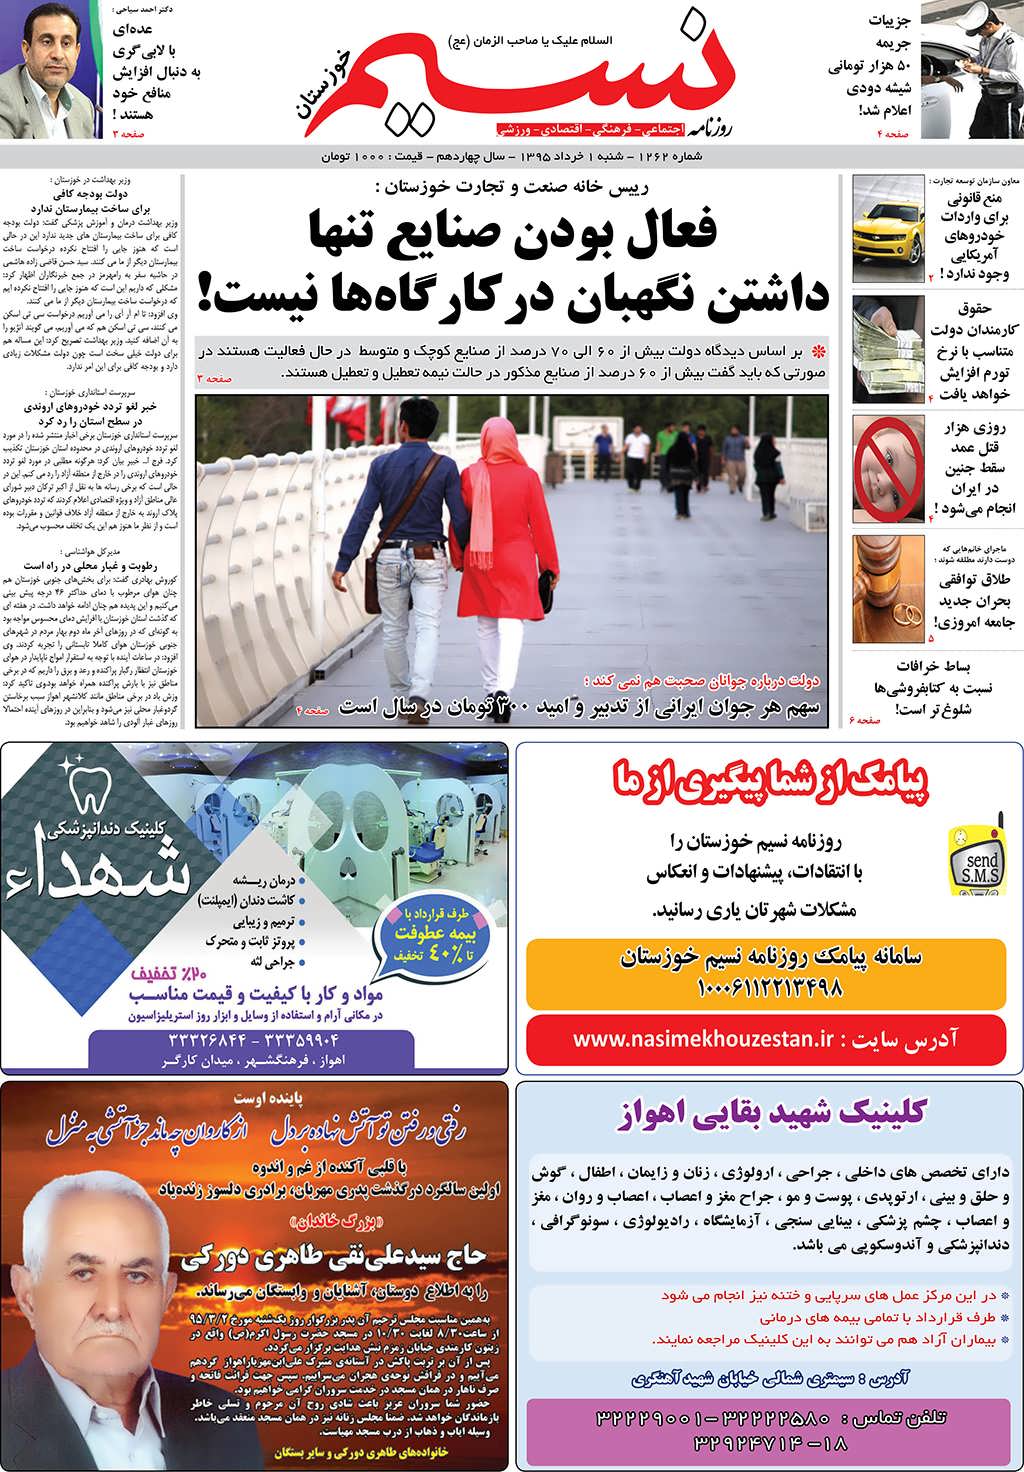 صفحه اصلی روزنامه نسیم شماره 1262